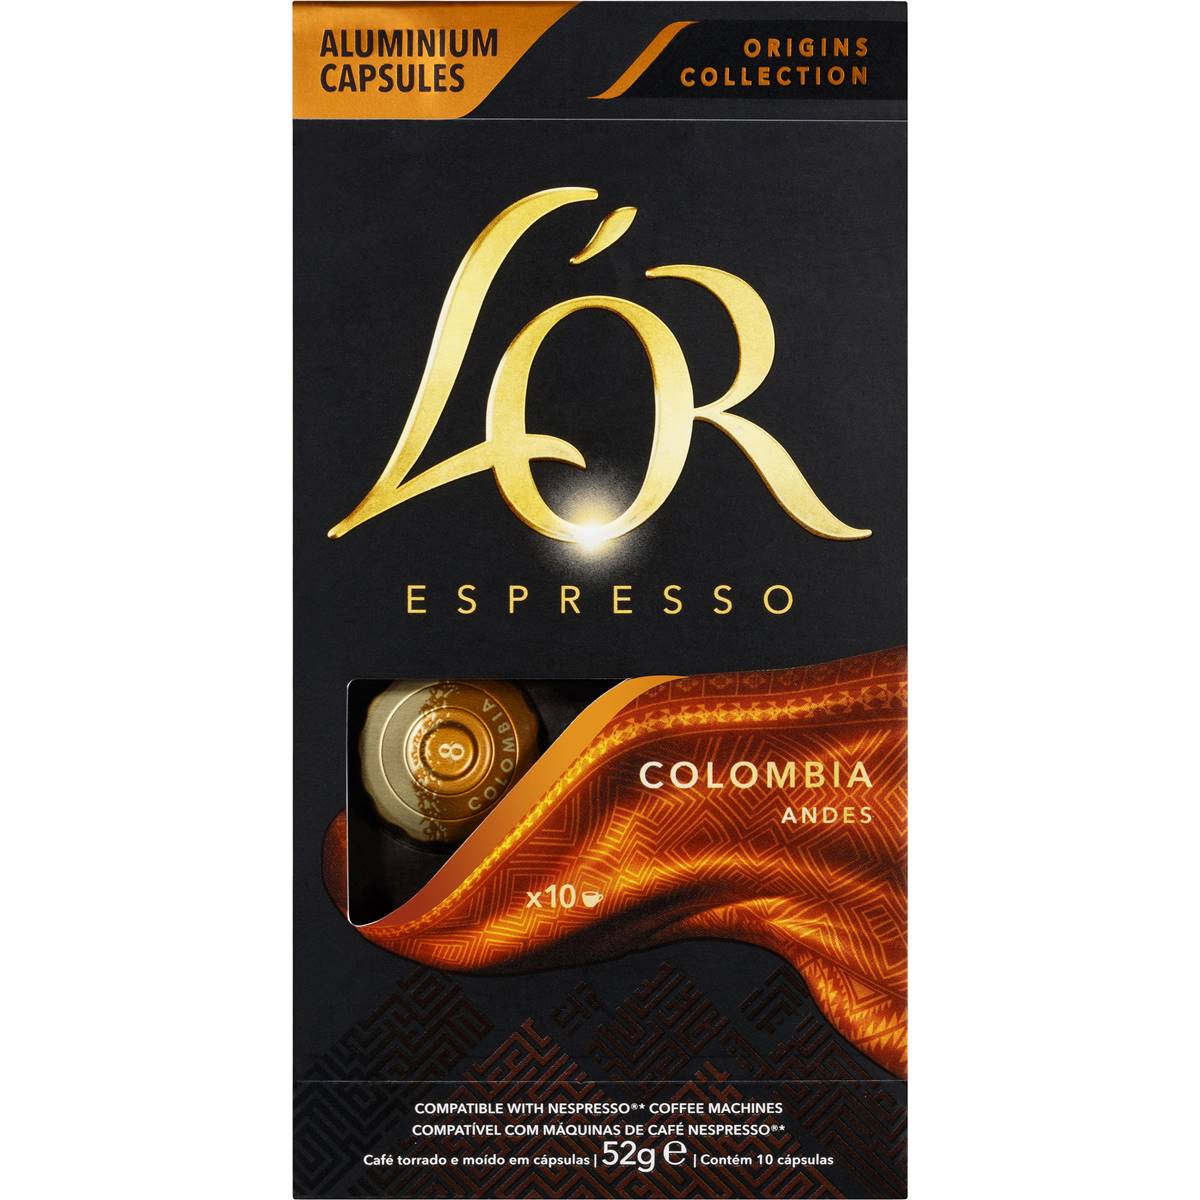 L'or Espresso Colombia Coffee Capsule